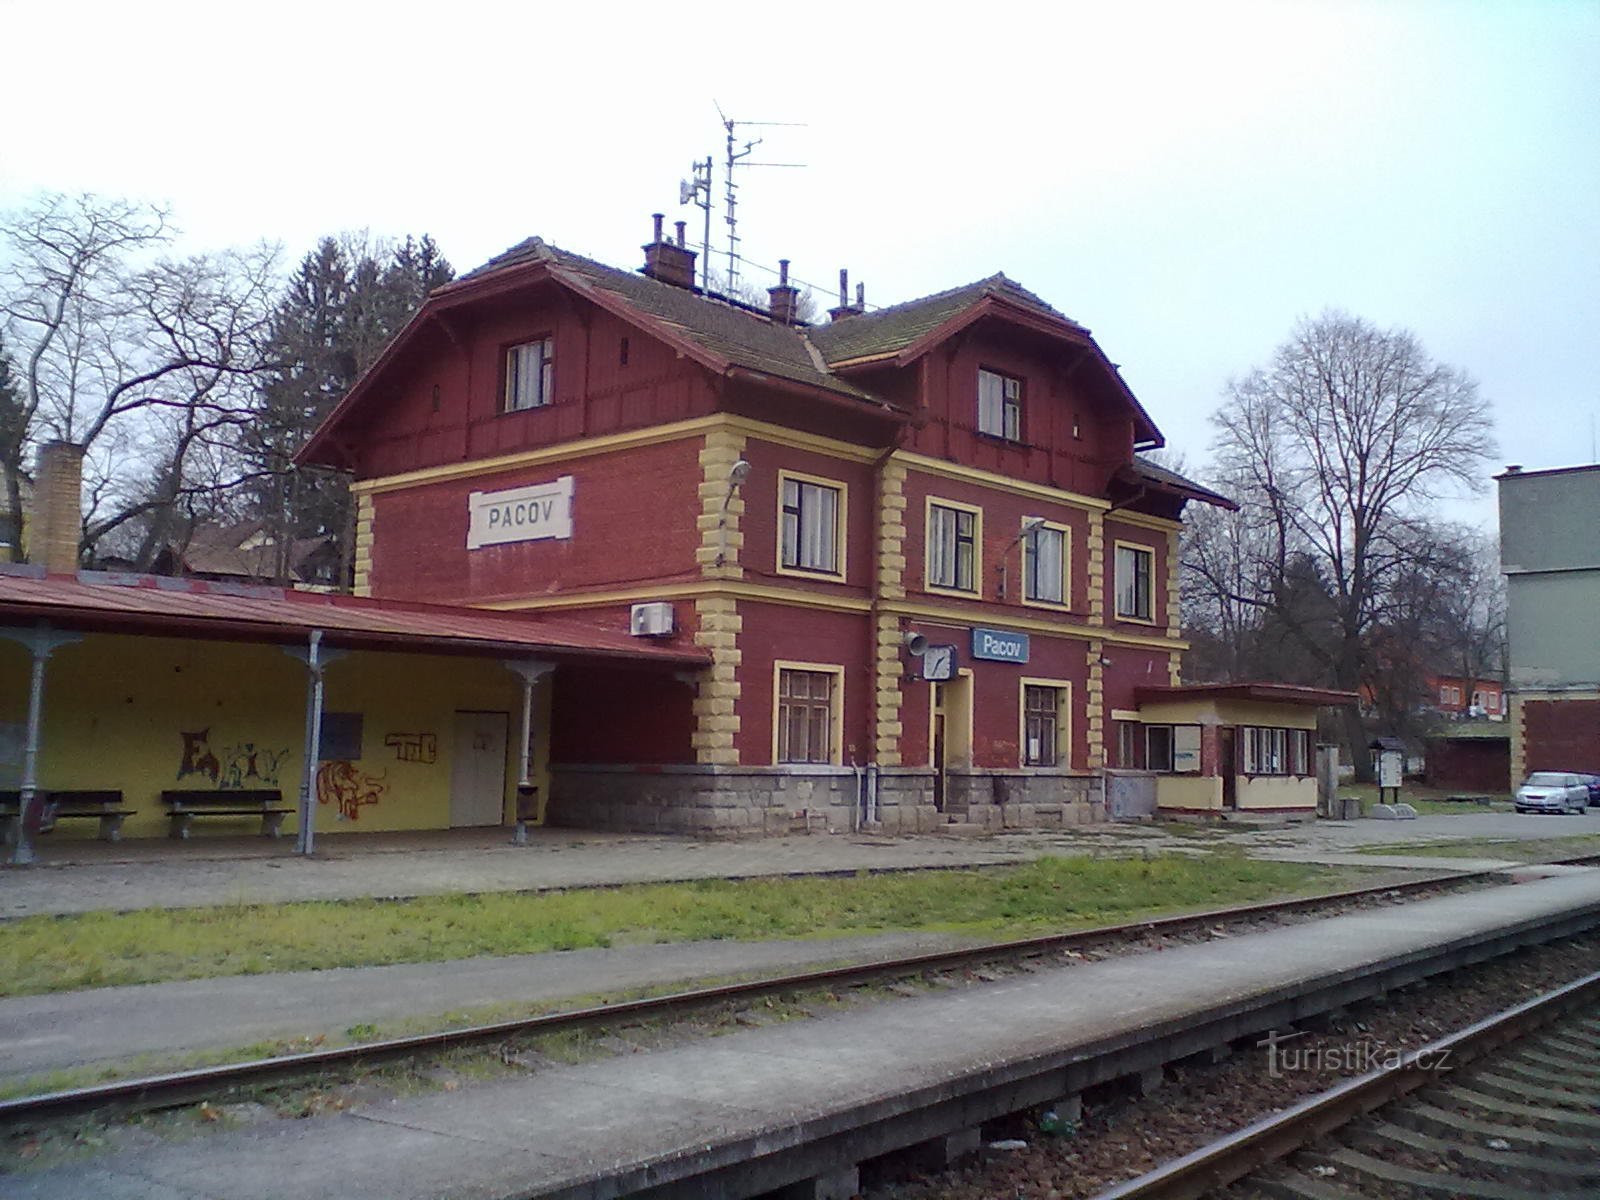 1. stazione ferroviaria di Pacov - punto di partenza e di arrivo del pellegrinaggio.